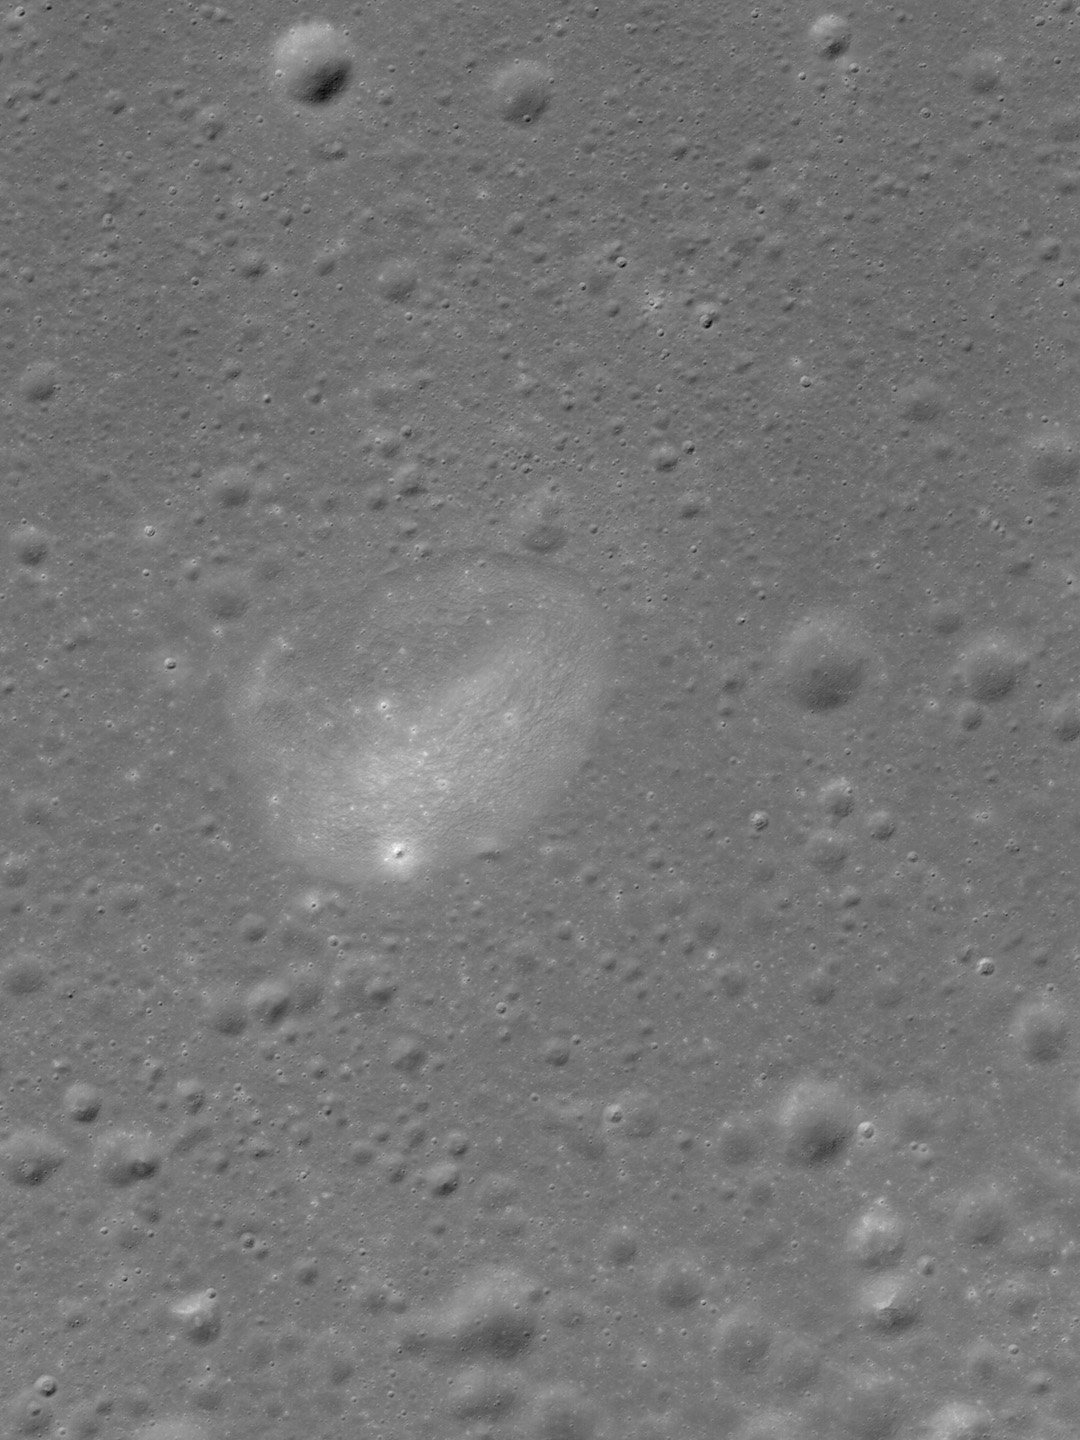 foto danuri terra luna